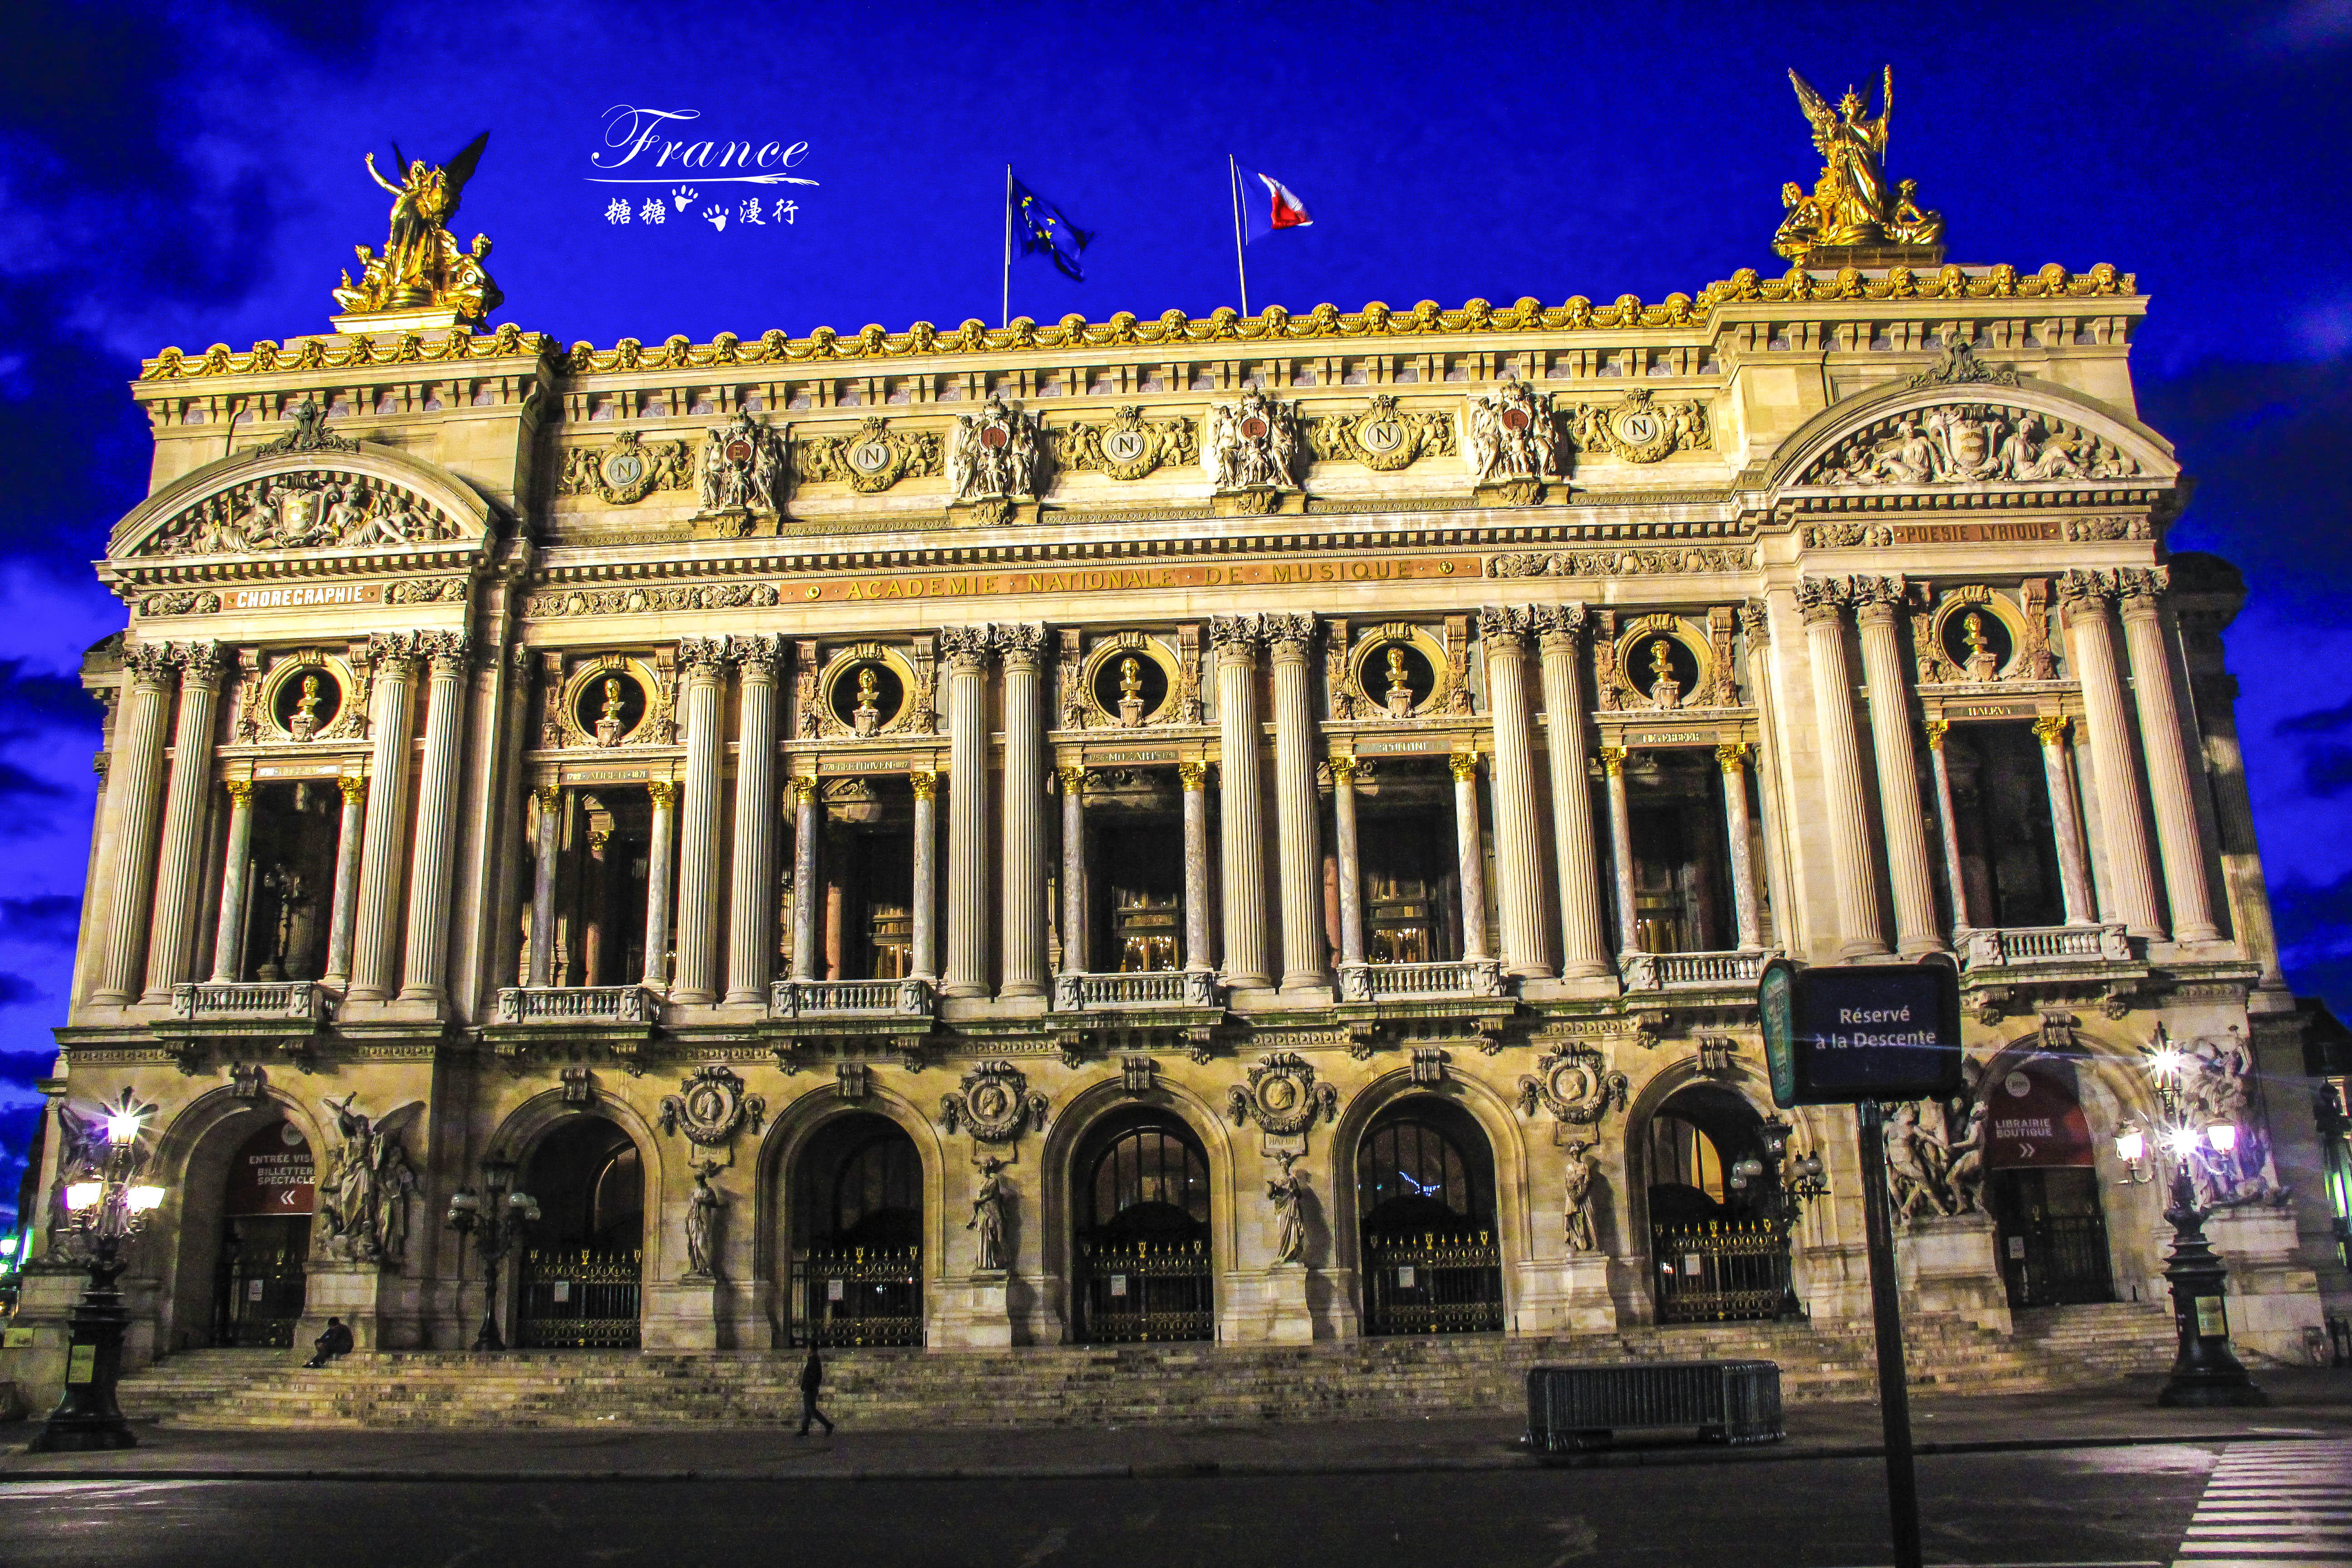 法兰西第二帝国的重要纪念物,剧院立面仿意大利晚期巴洛克建筑风格,并